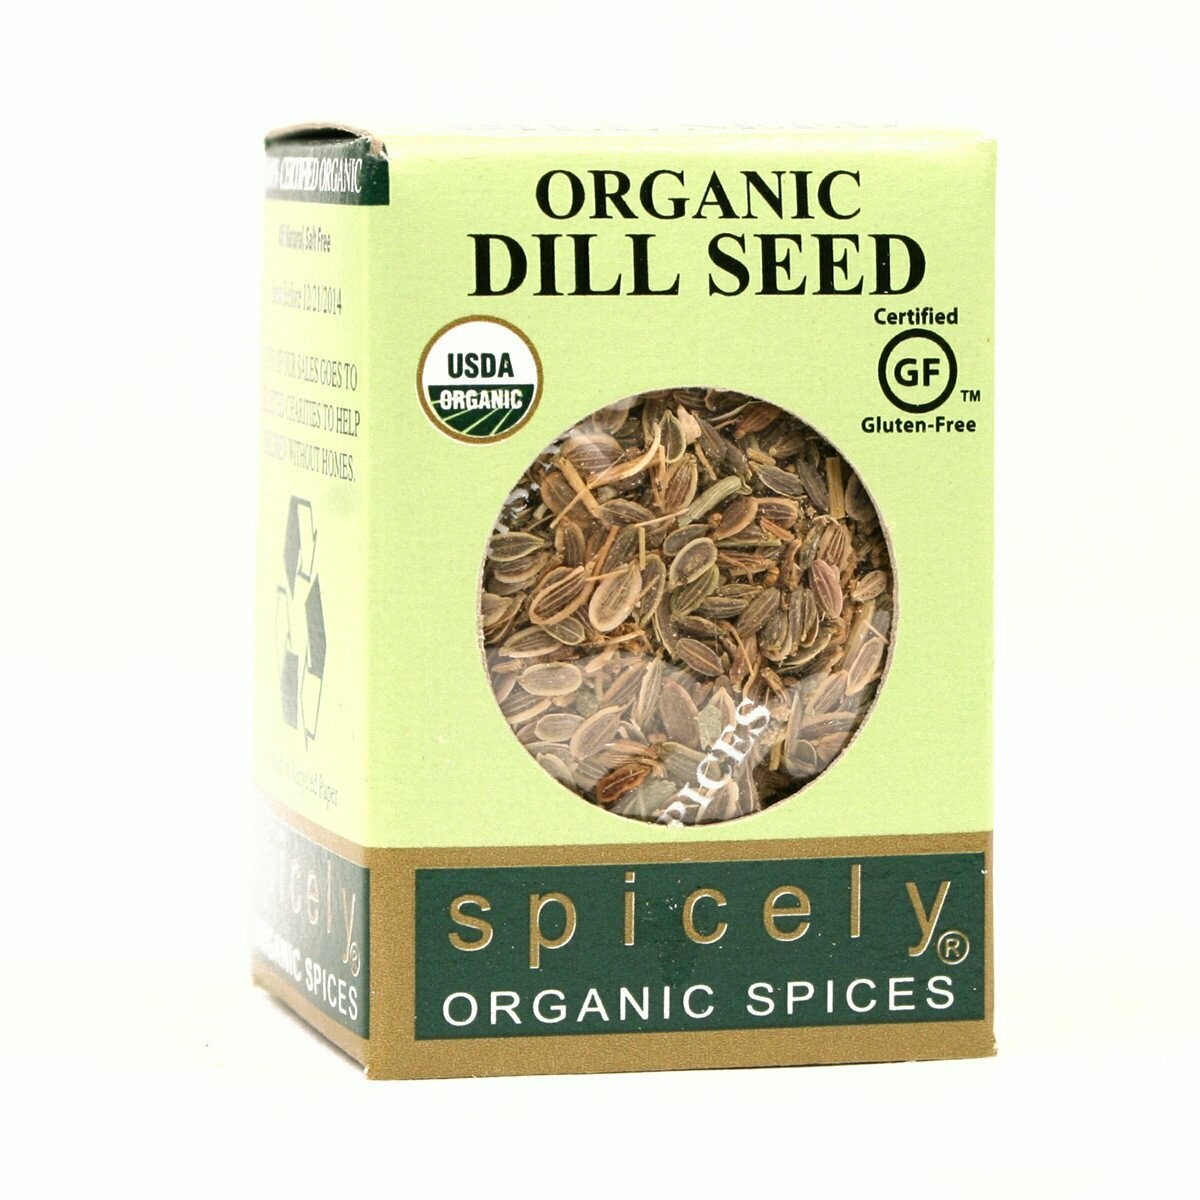 Organic Dill Seed